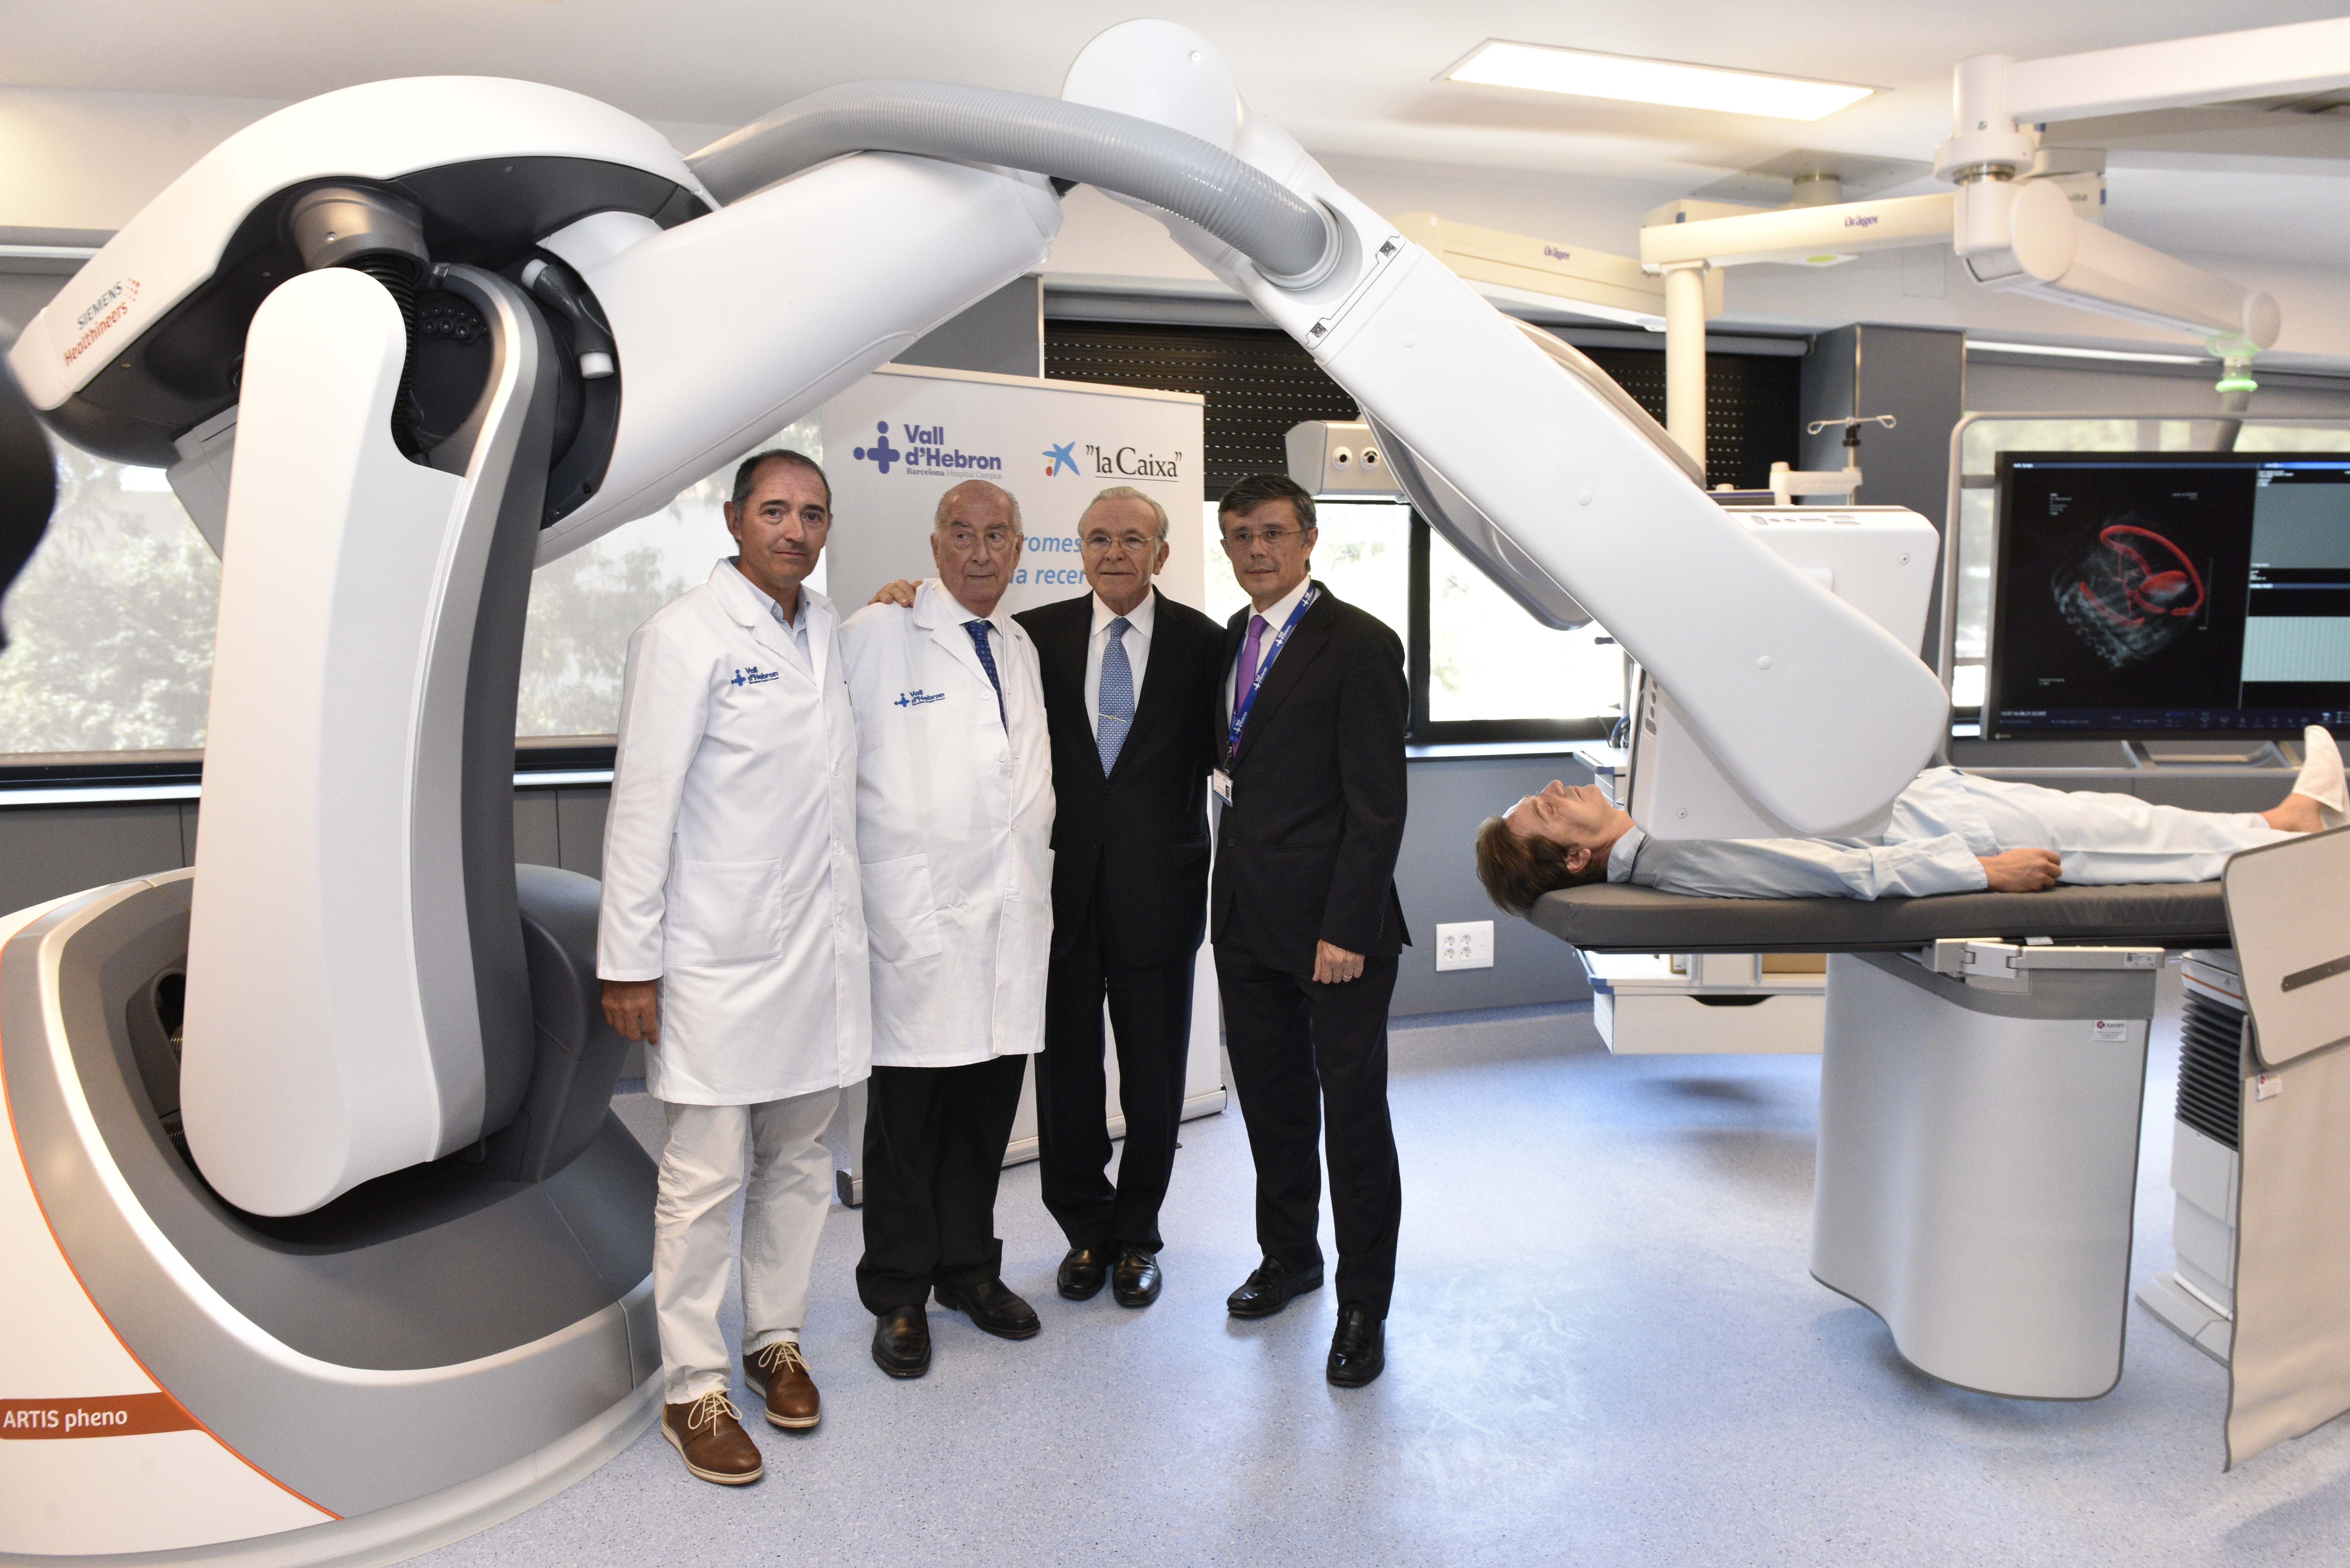 De izquierda a derecha: el Dr. Albert Salazar, gerente del Hospital Universitario Vall d’Hebron; el Dr. Josep Ramon Armengol Miró, director Vall d’Hebron-Wider Barcelona; Isidro Fainé, presidente de la Fundación Bancaria ”la Caixa”, y el Dr. Joan X. Comel